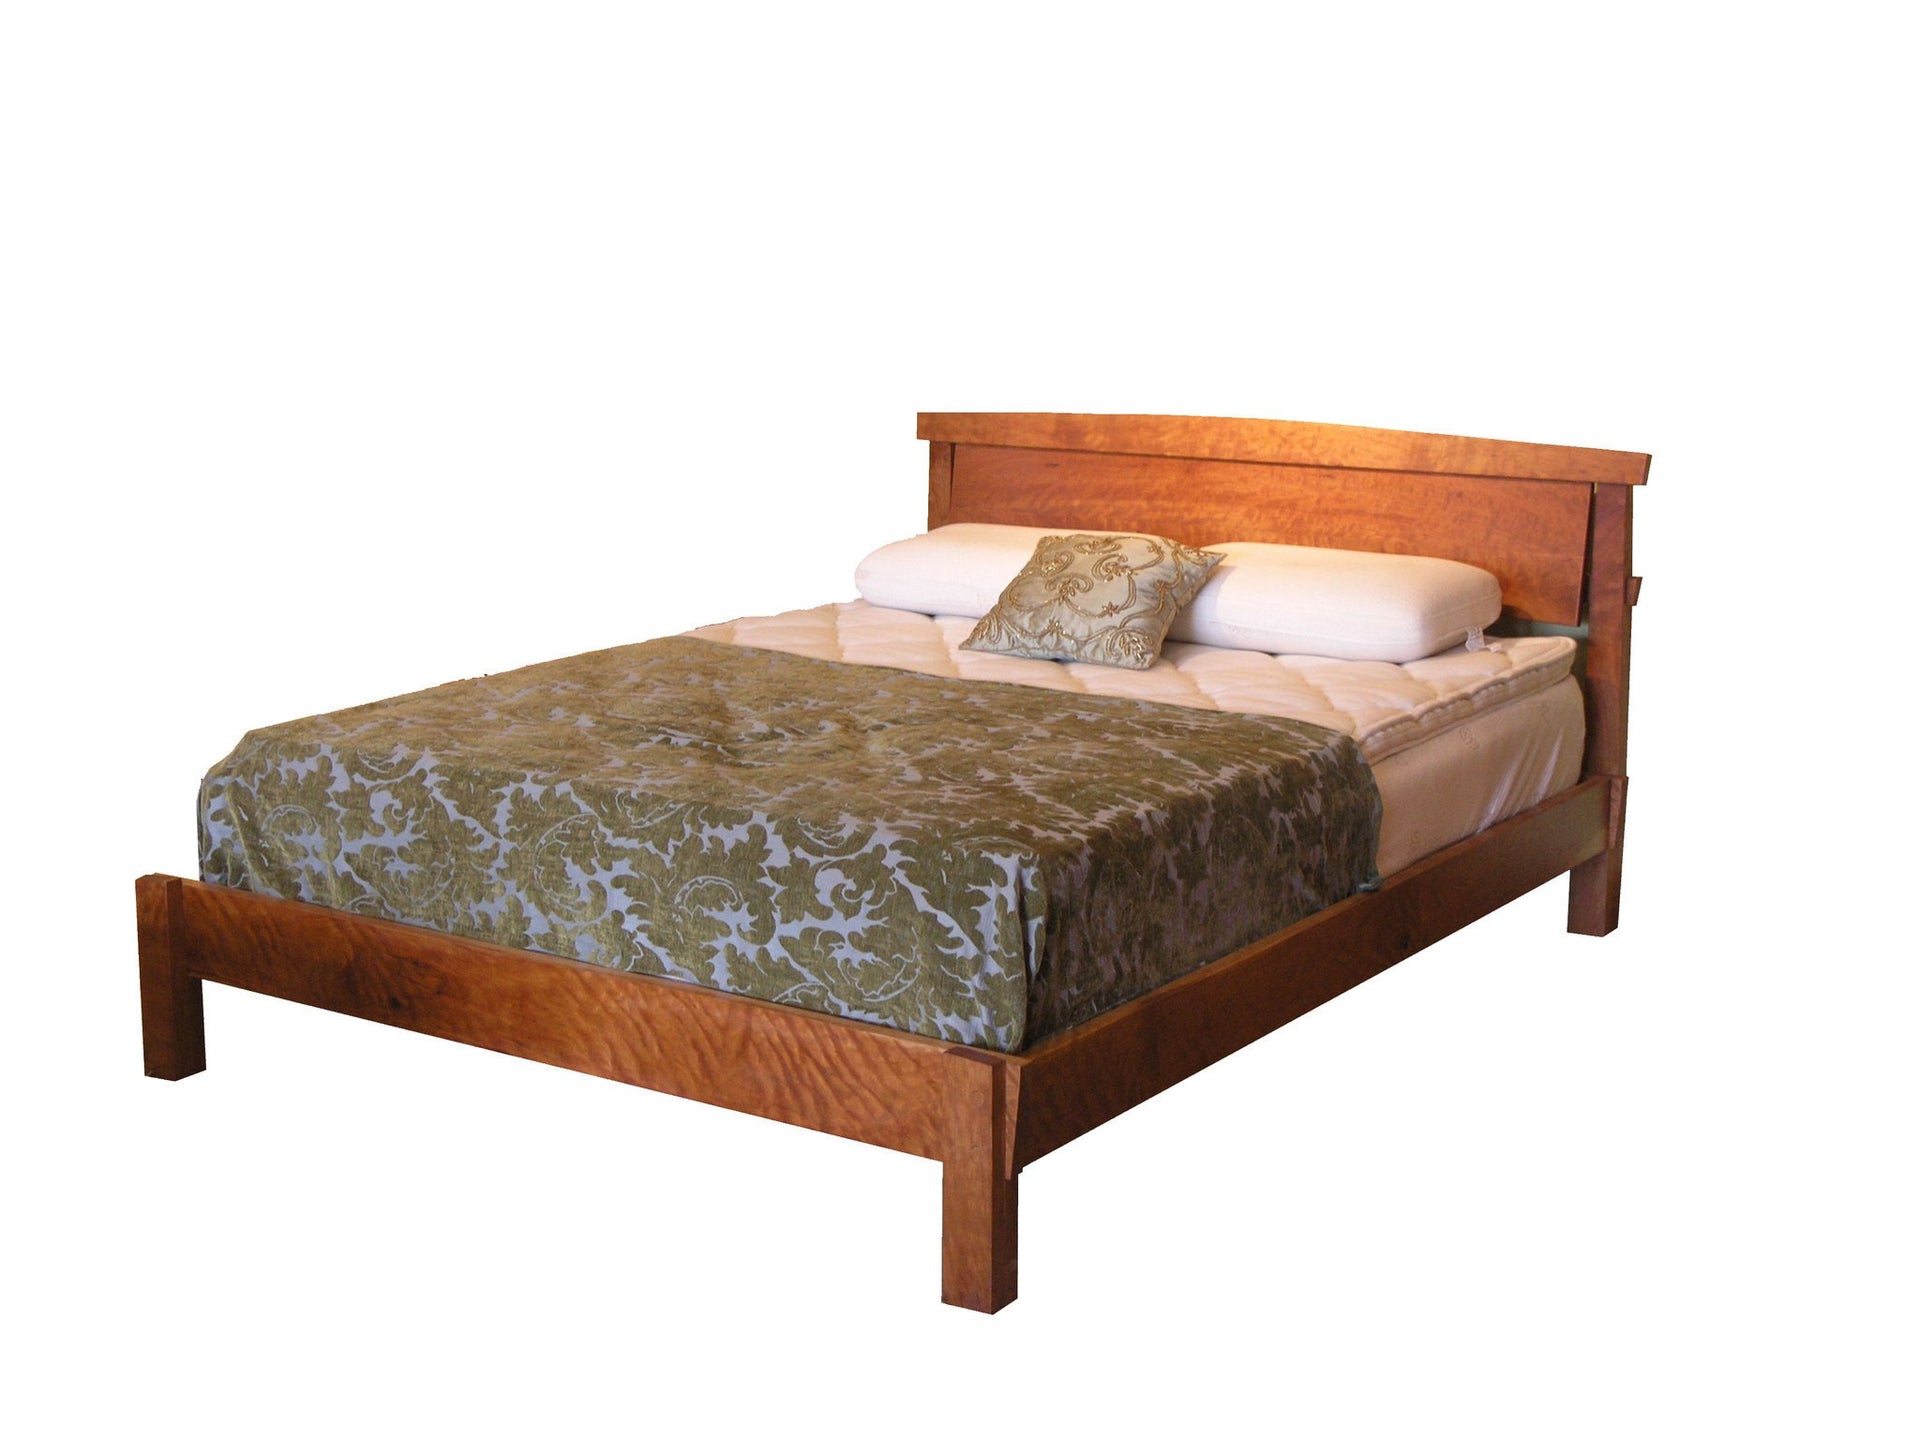 Modern platform bed built from natural solid wood